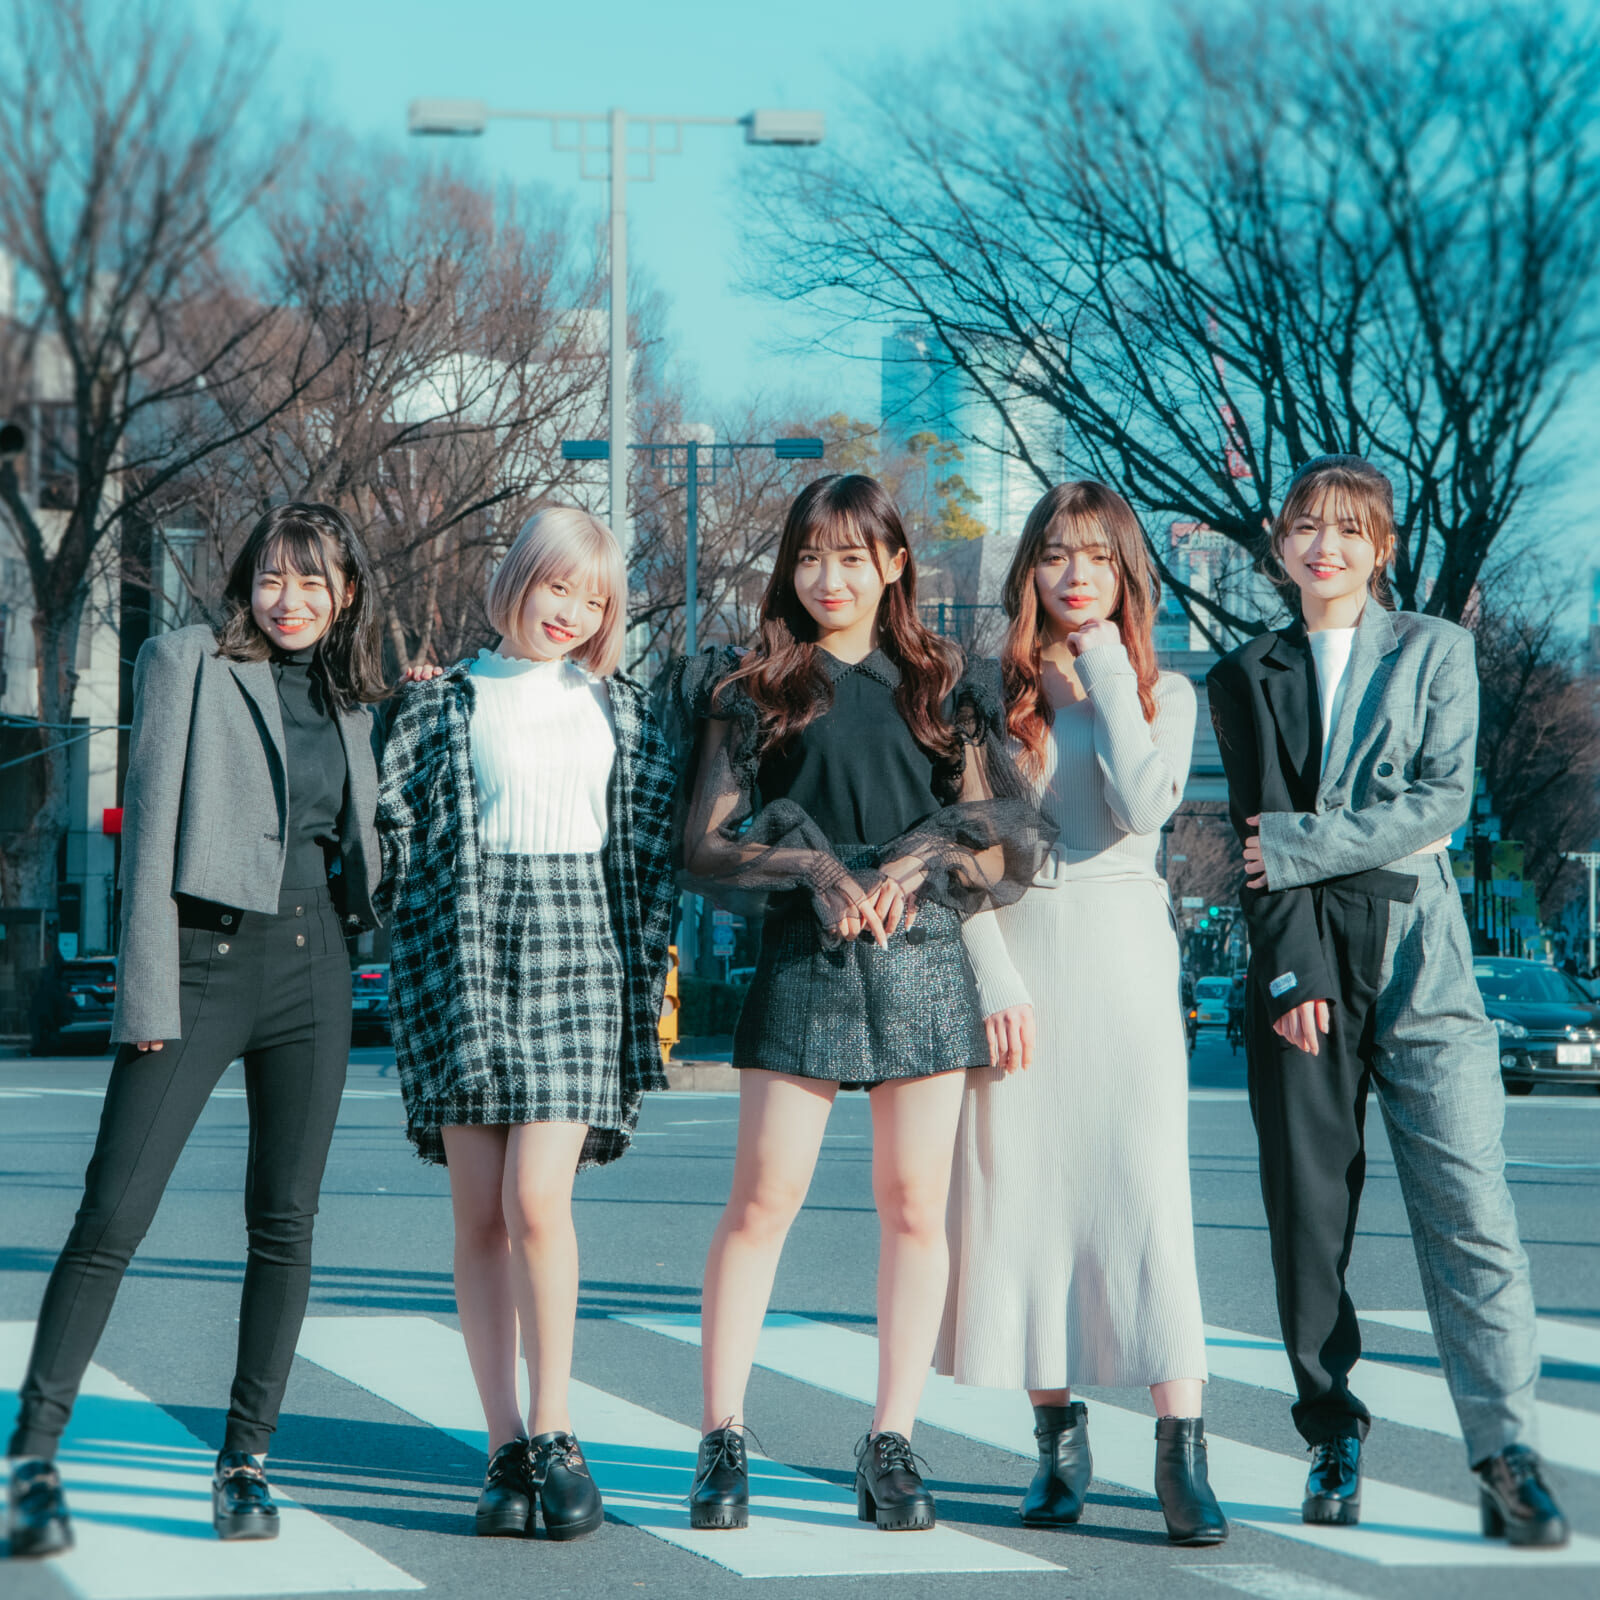 恋リア5人組ガールズユニット「Five emotion」 が配信曲「CANDY POP」をリリース